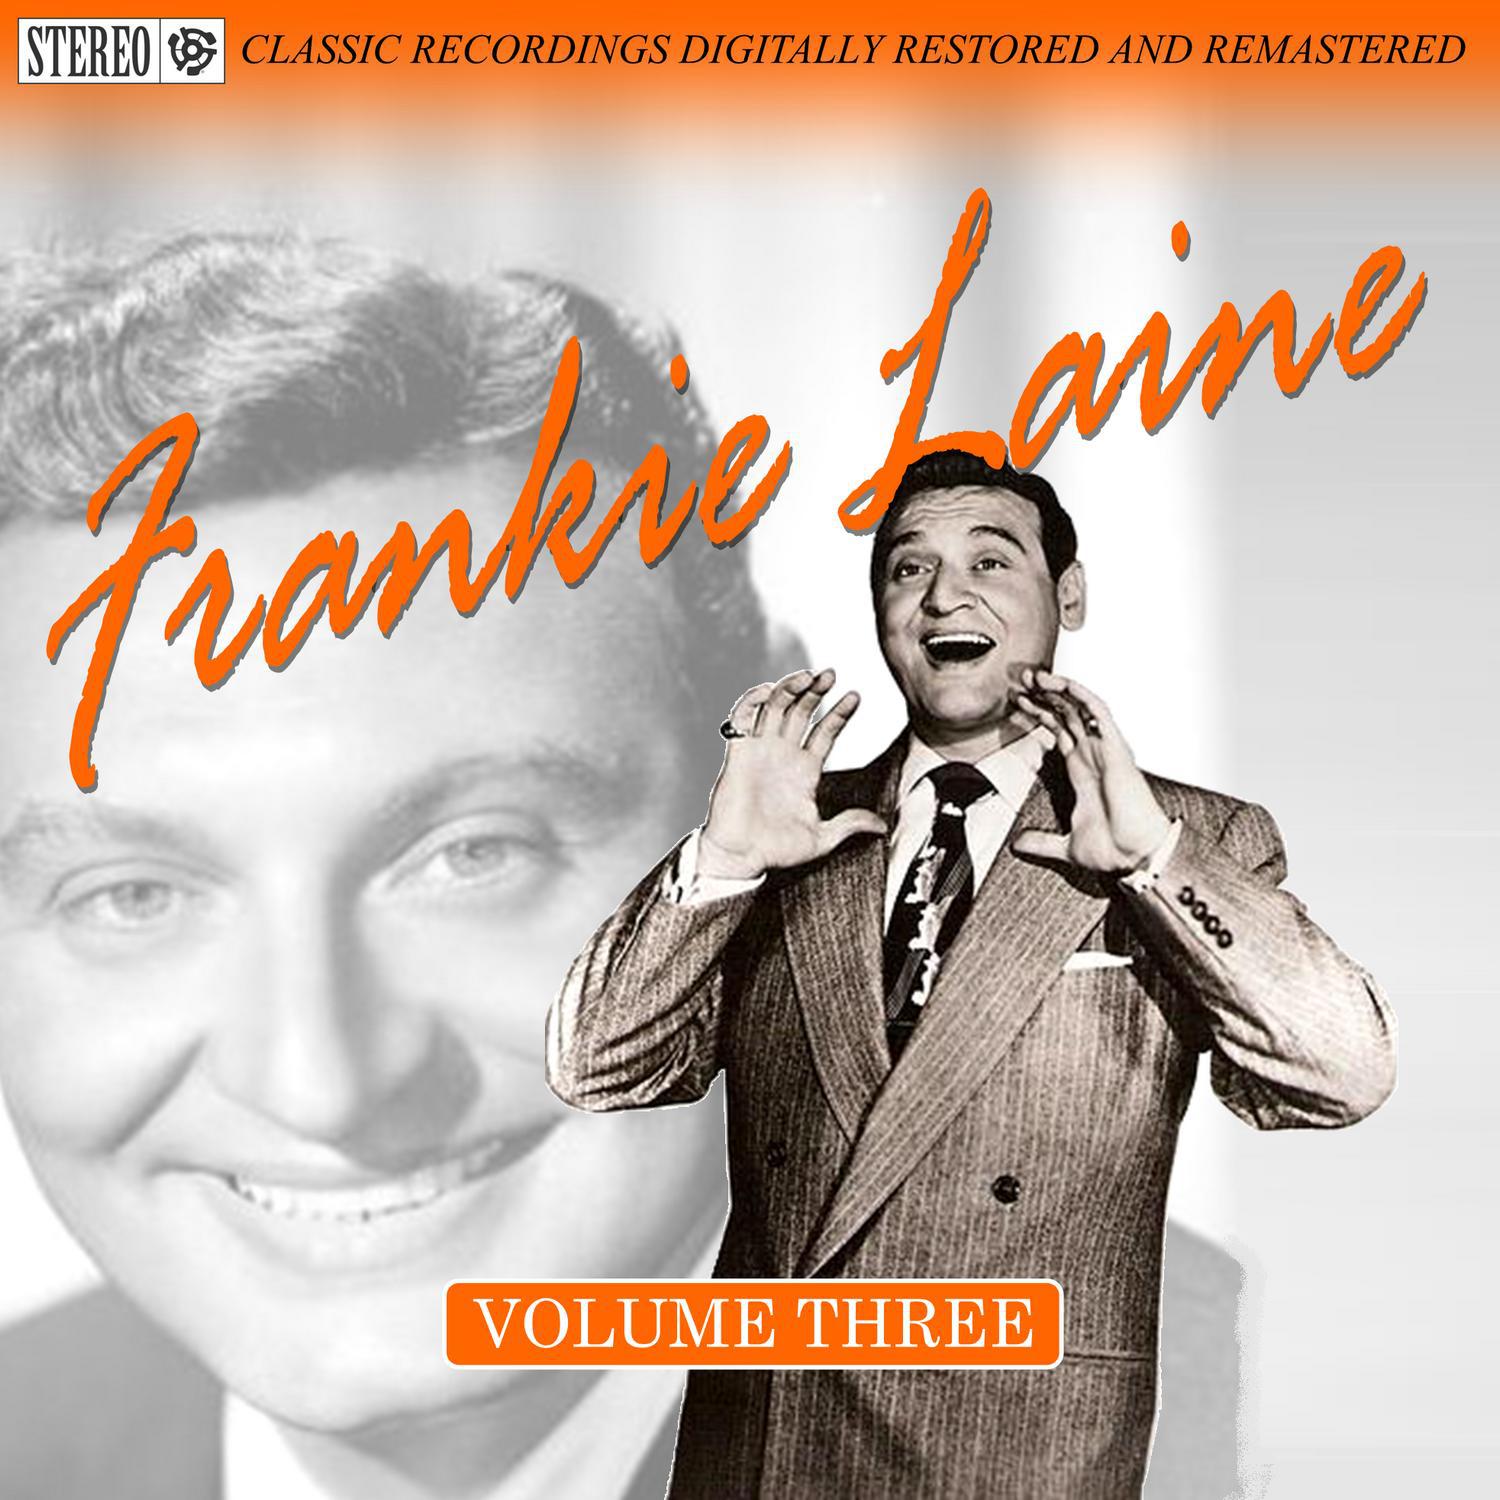 Frankie Laine Volume Three